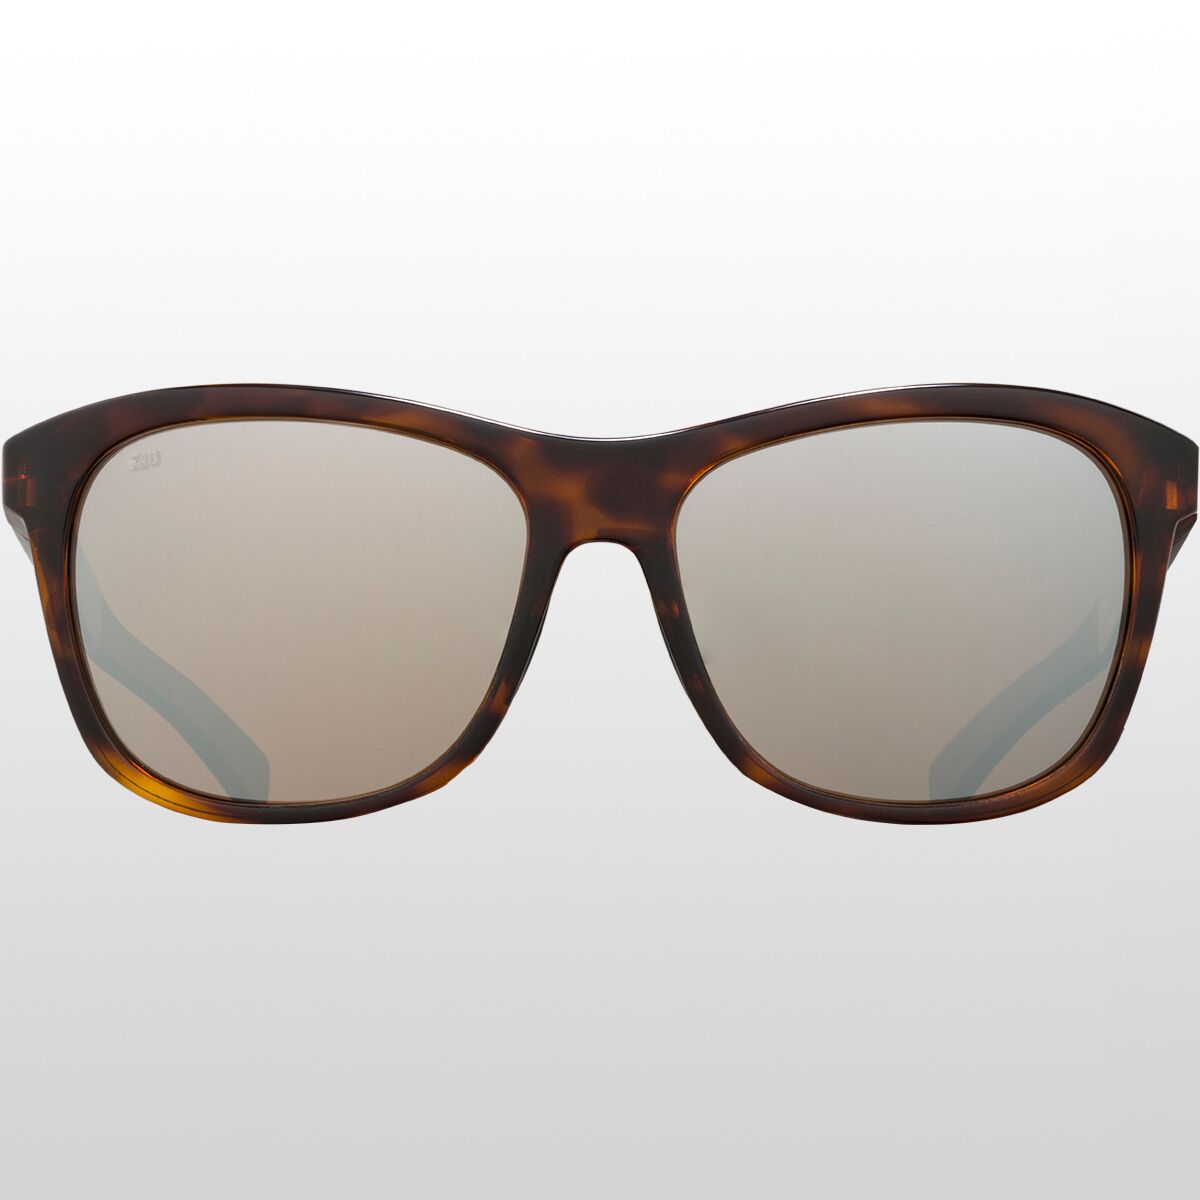 Поляризованные солнцезащитные очки Vela 580G Costa